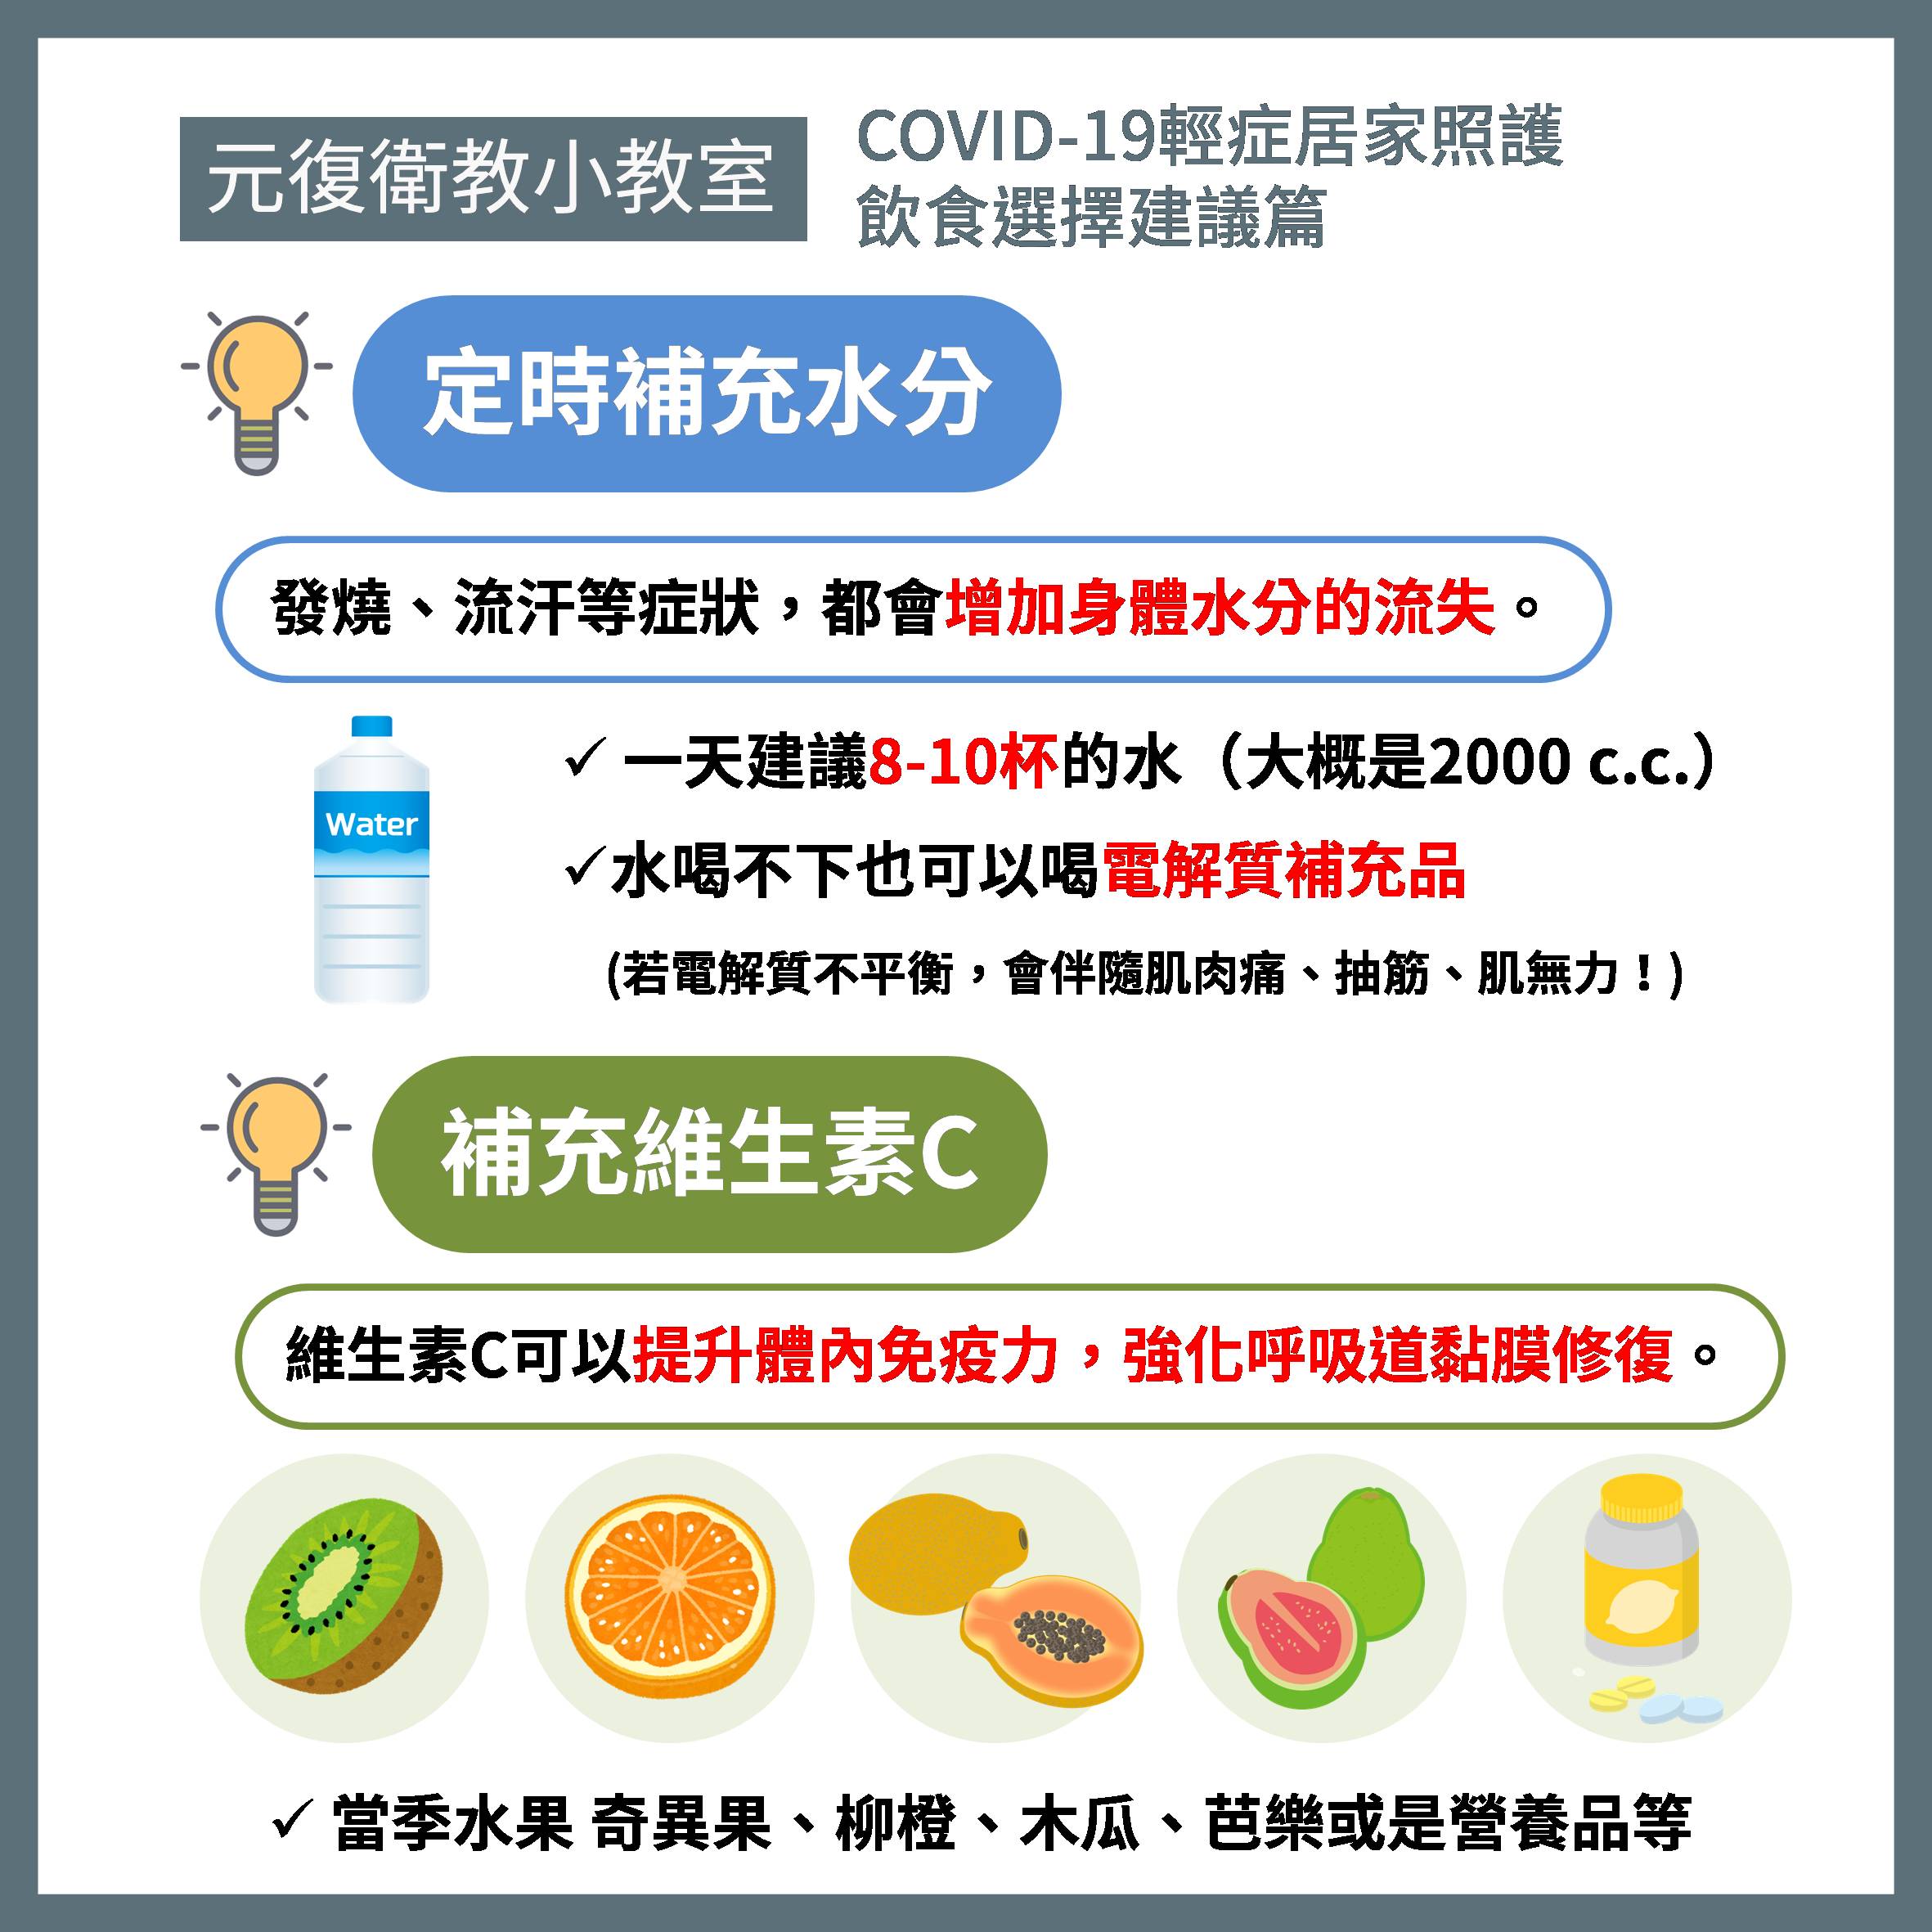 元復衛教小教室 / COVID-19輕症 居家照護飲食選擇建議篇